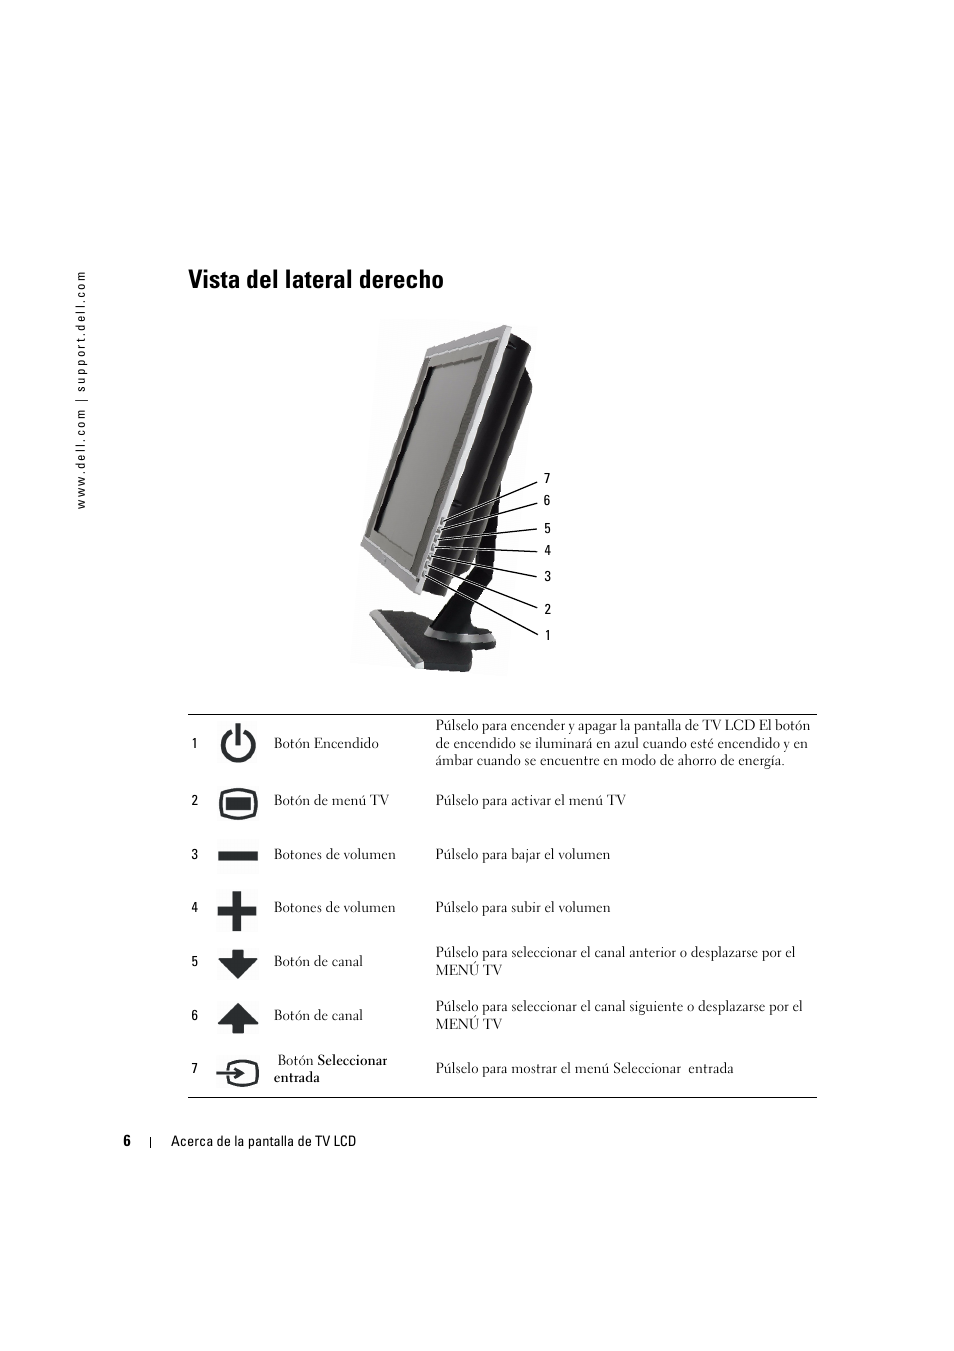 Vista del lateral derecho | Dell LCD TV W2606C Manual del usuario | Página 6 / 60